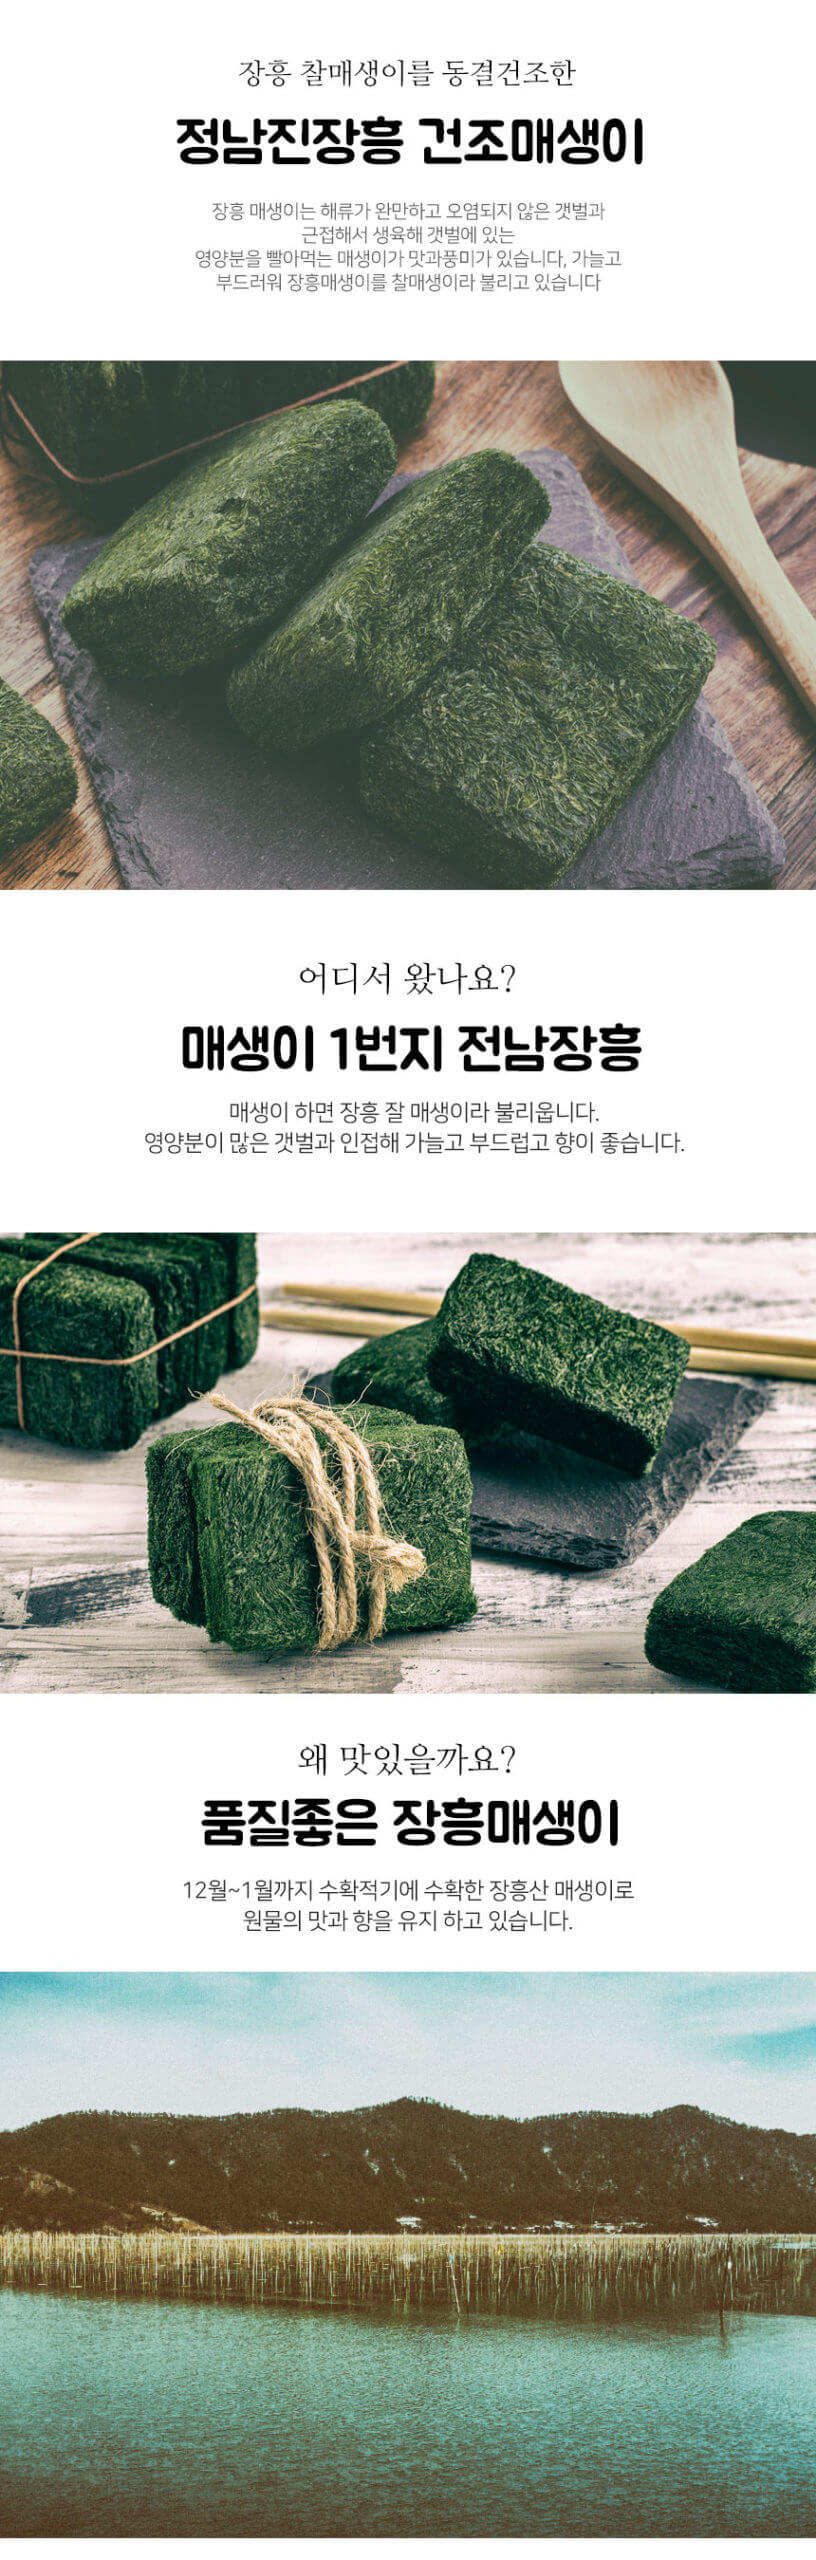 韓國食品-정남진장흥 건조매생이 (20팩)